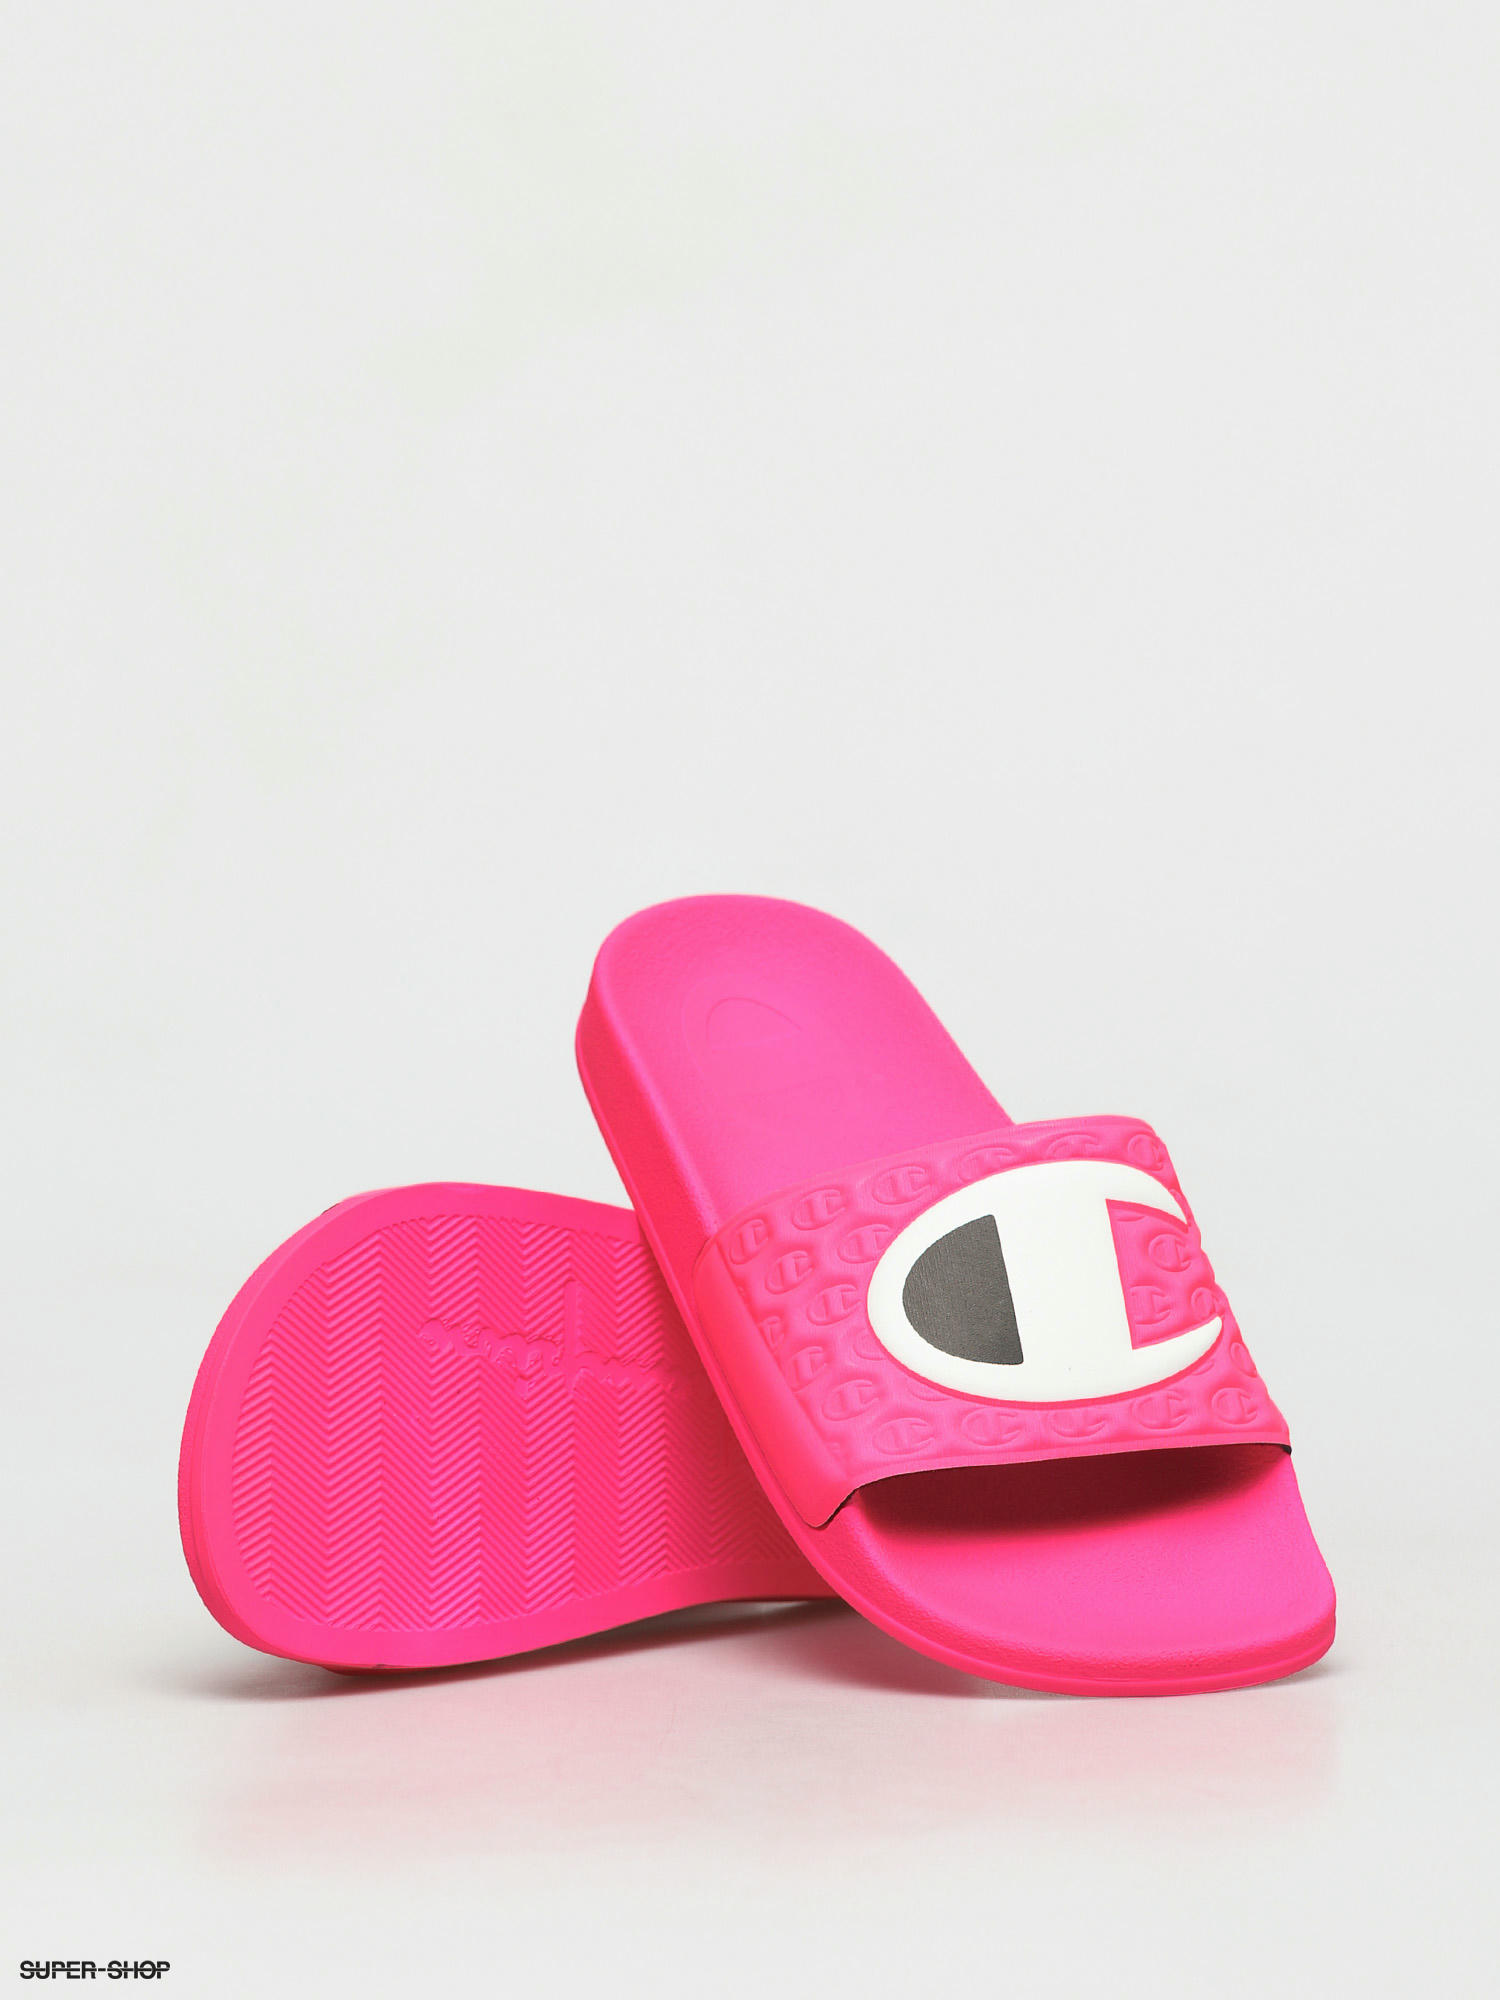 Slide M Evo S10715 Flip-flops (pink/nbk 